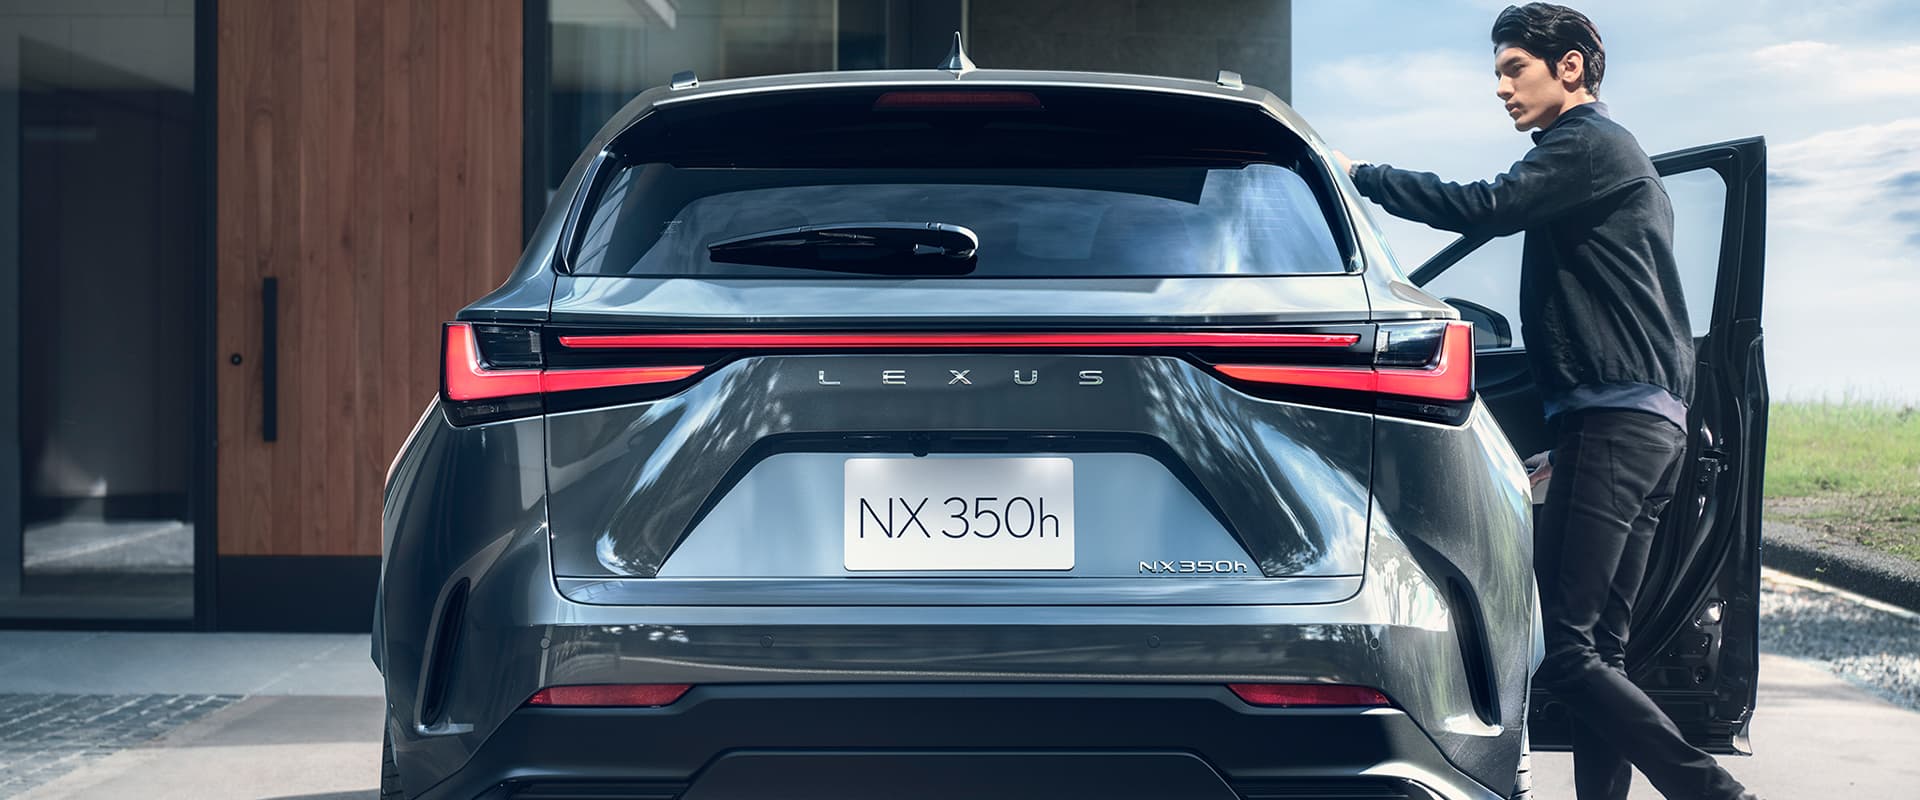 Hình ảnh xe Lexus NX 350h